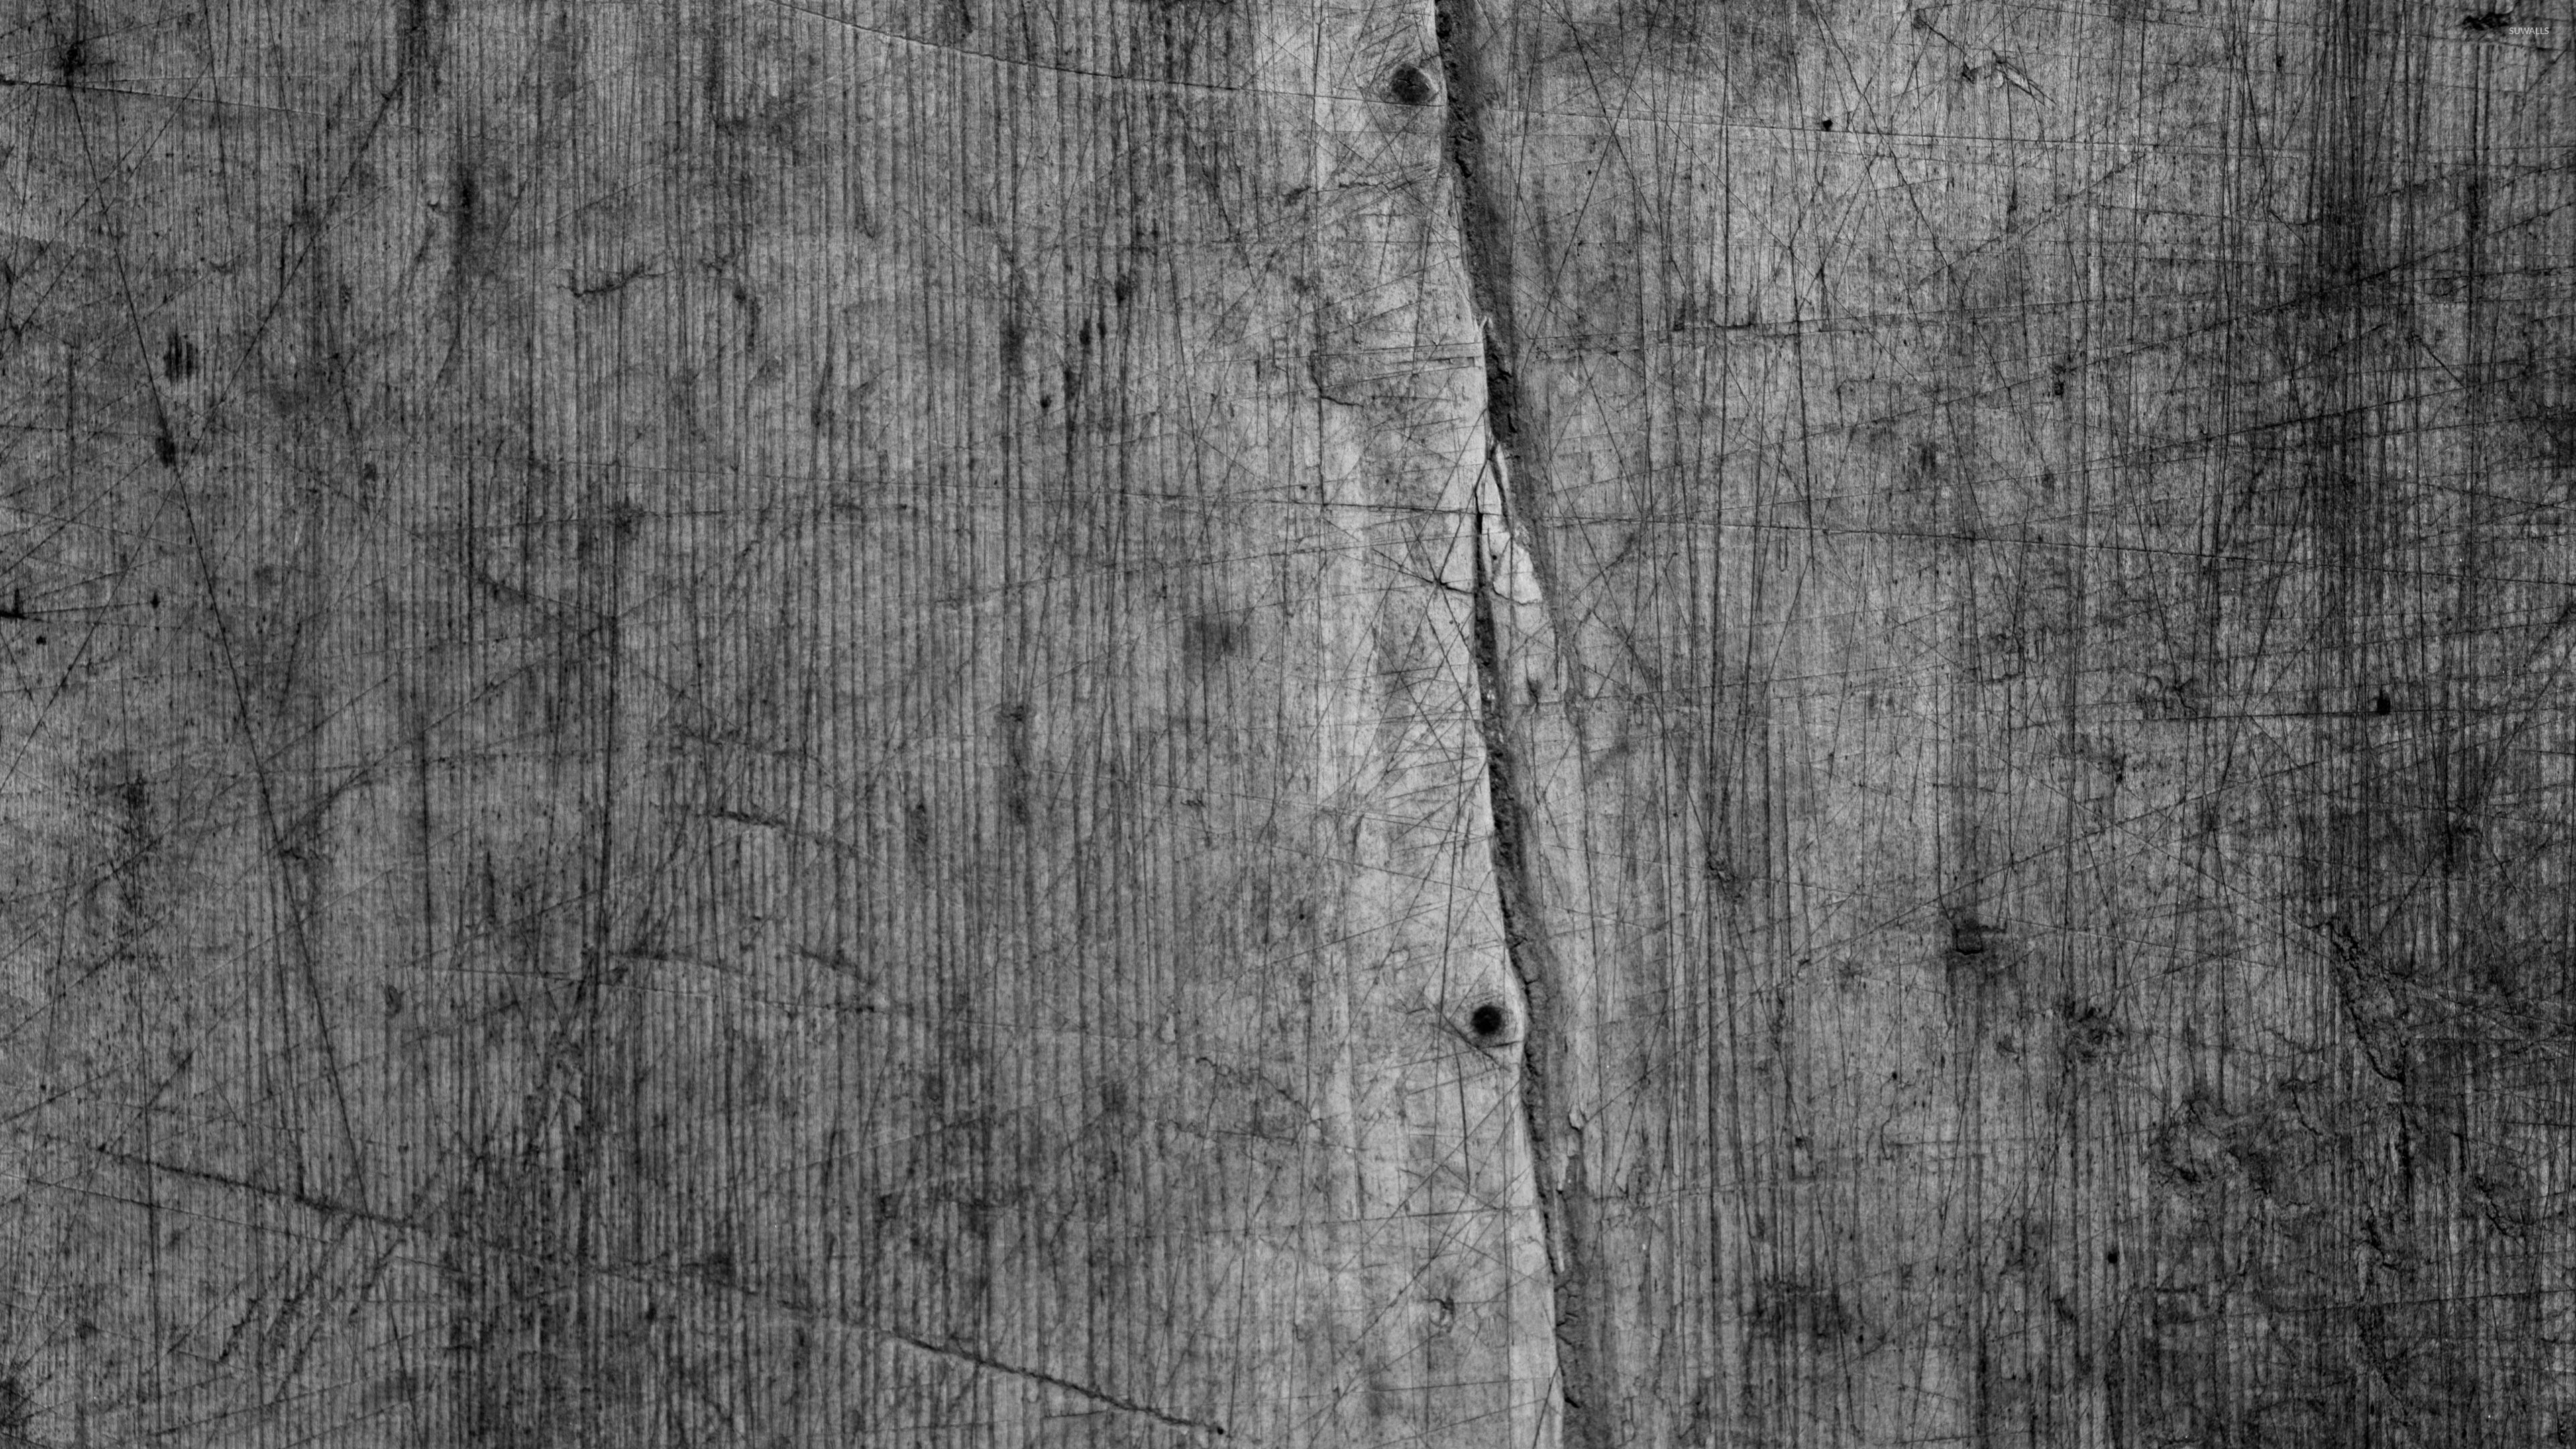 papel pintado de madera gris,madera,tablón,árbol,en blanco y negro,fotografía monocroma